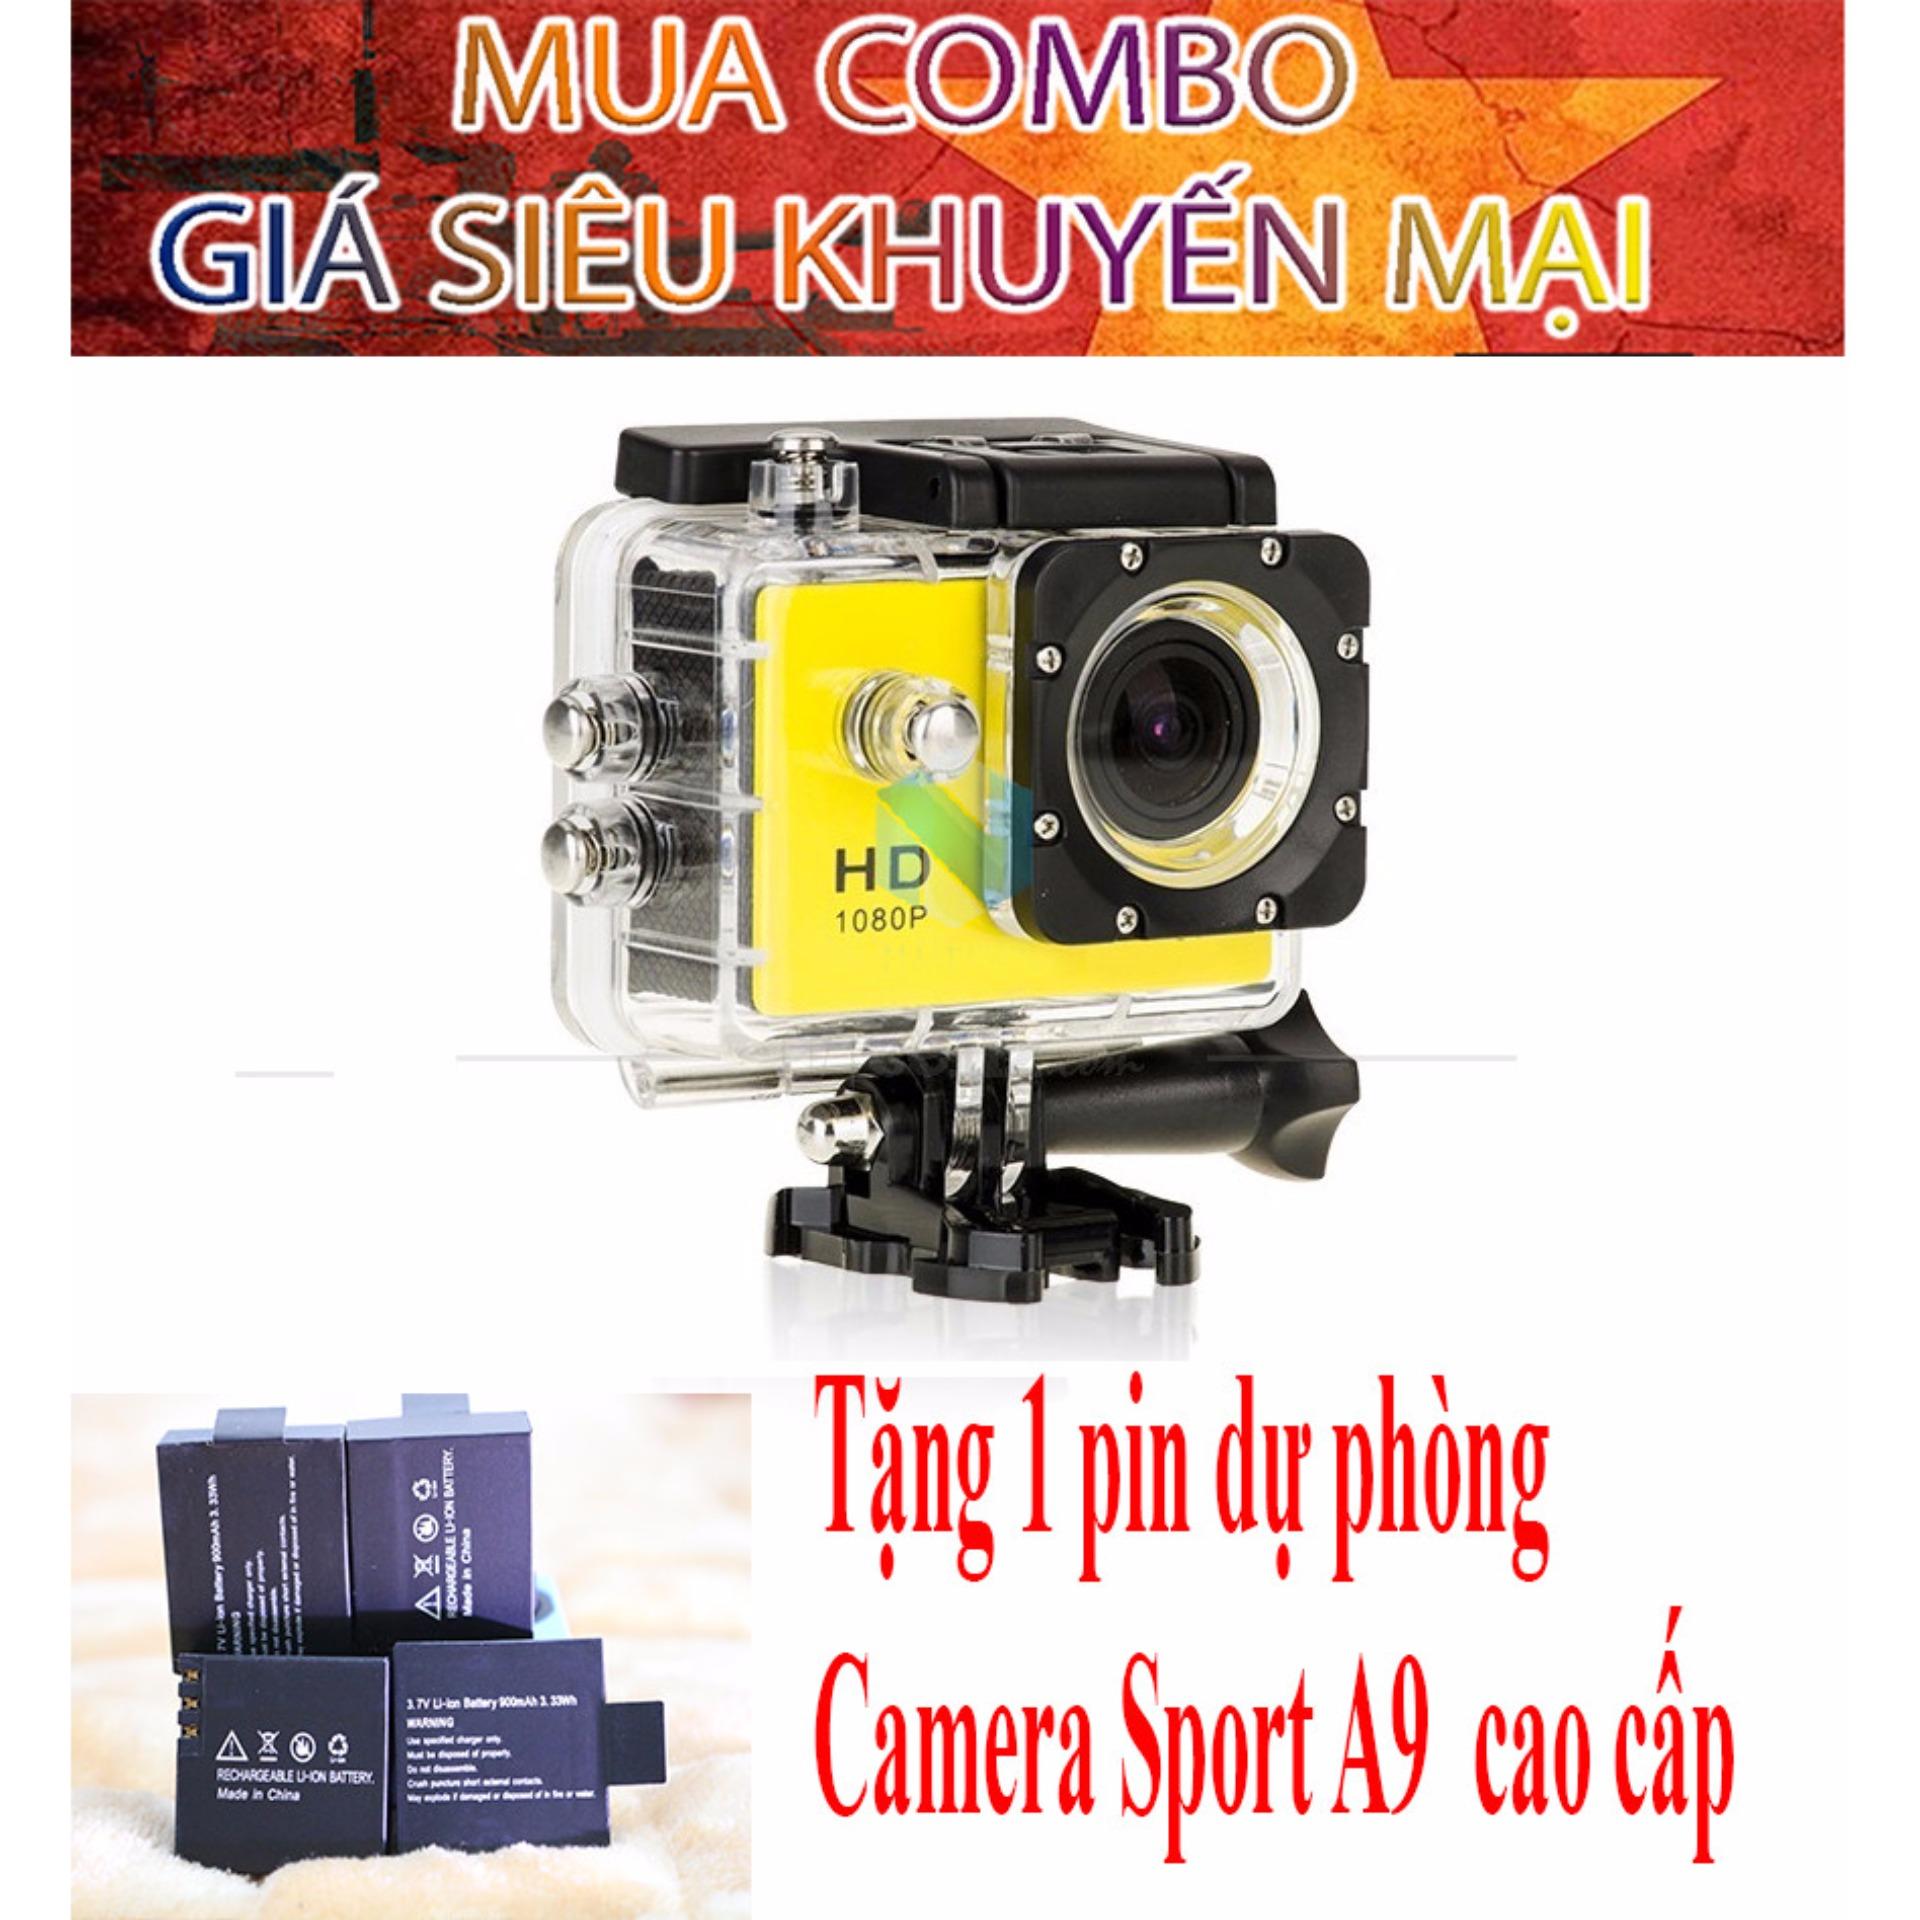 Combo Camera hành trình chuyên phượt 1080p (màu vàng) tặng kèm pin sạc dự phòng